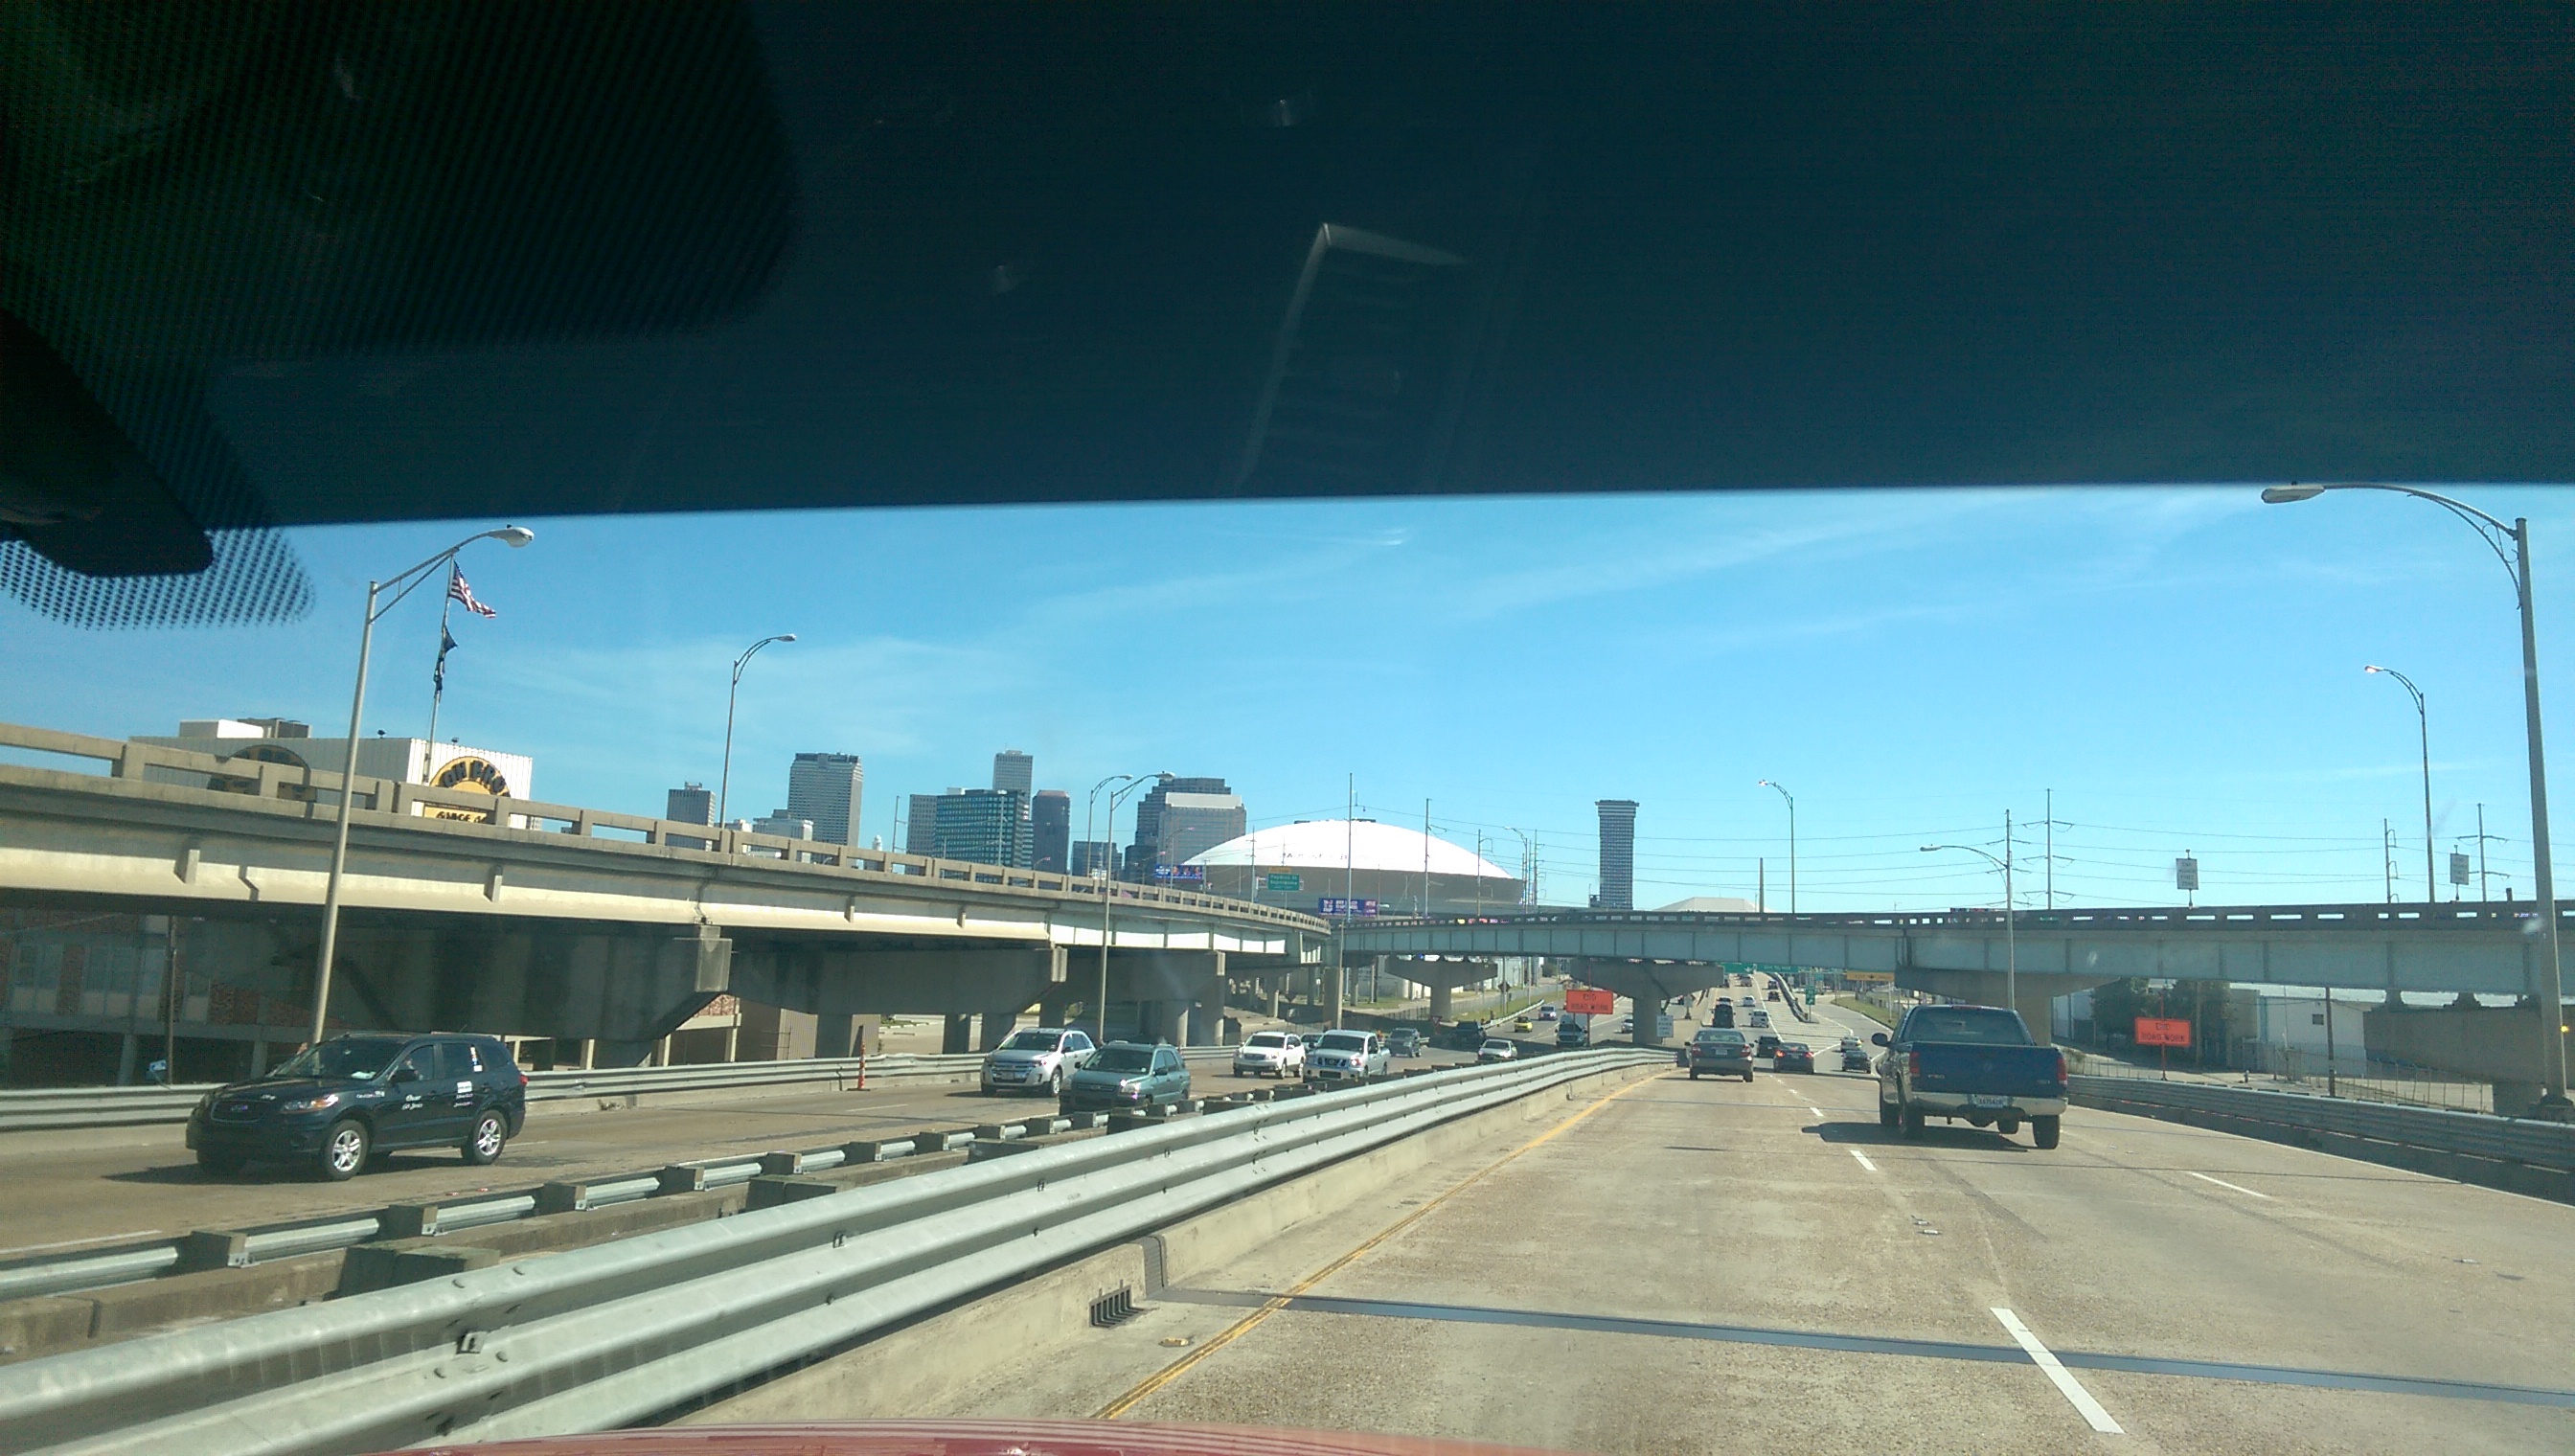 远处可见 Superdome 以及其他建筑